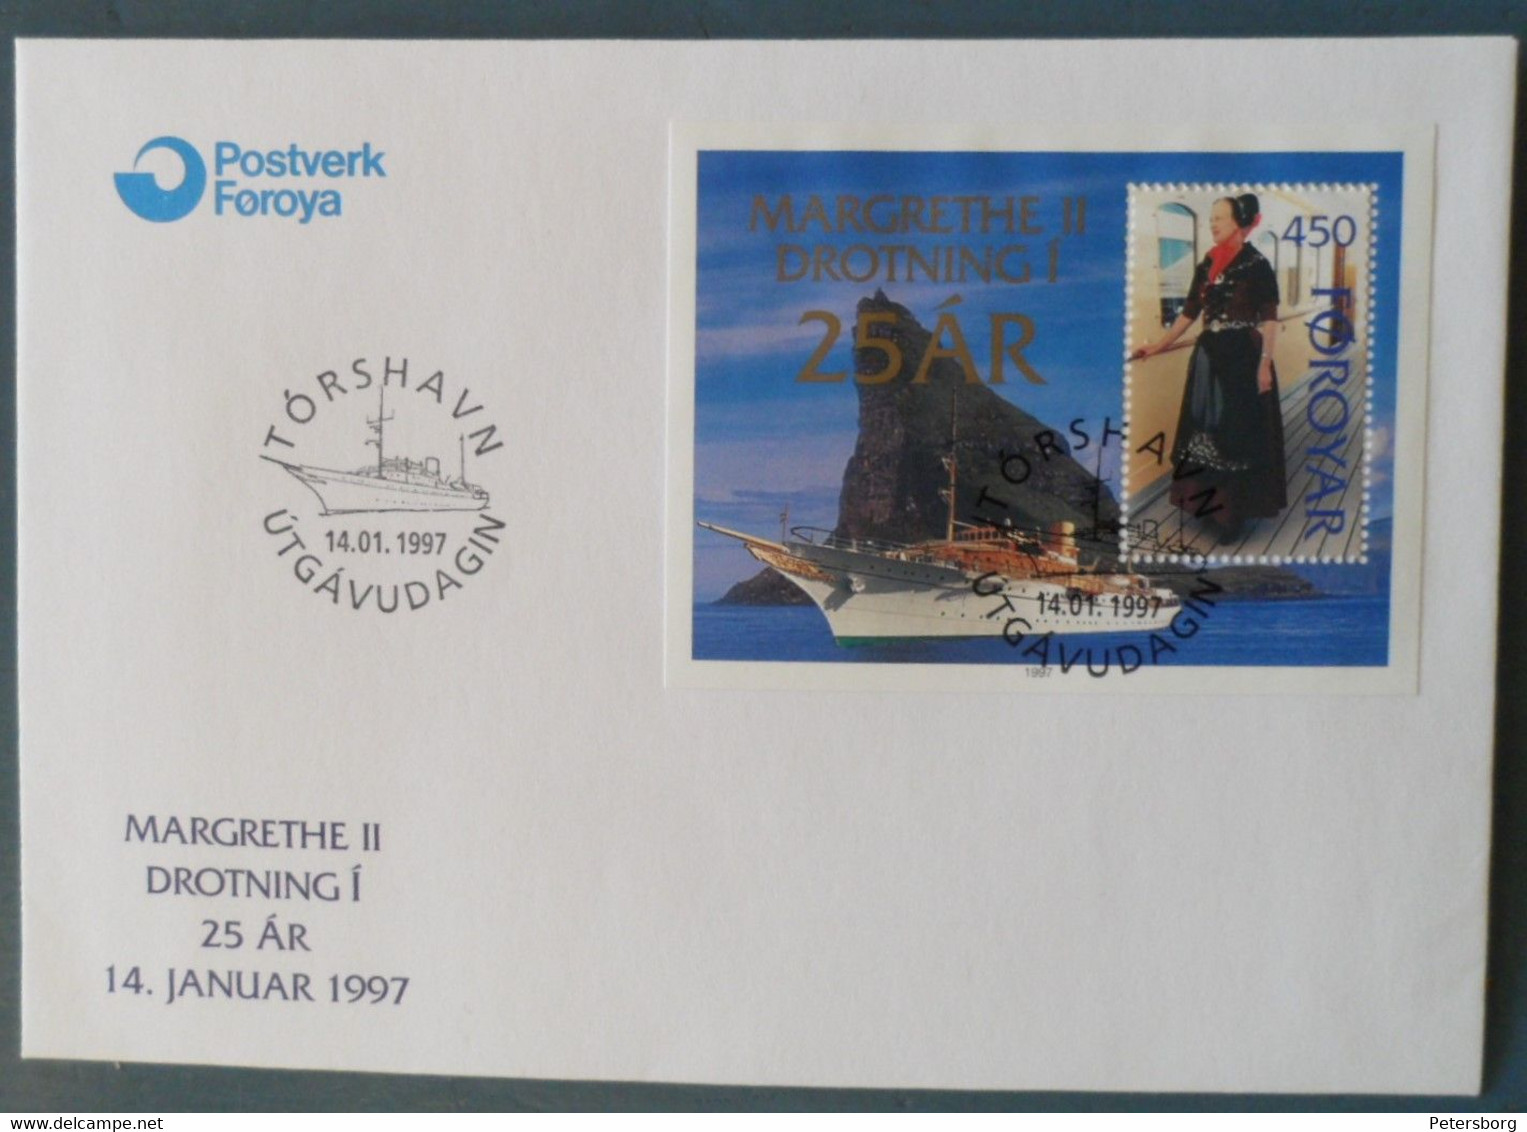 First Day Letter Faroe Islands - Faroe Islands